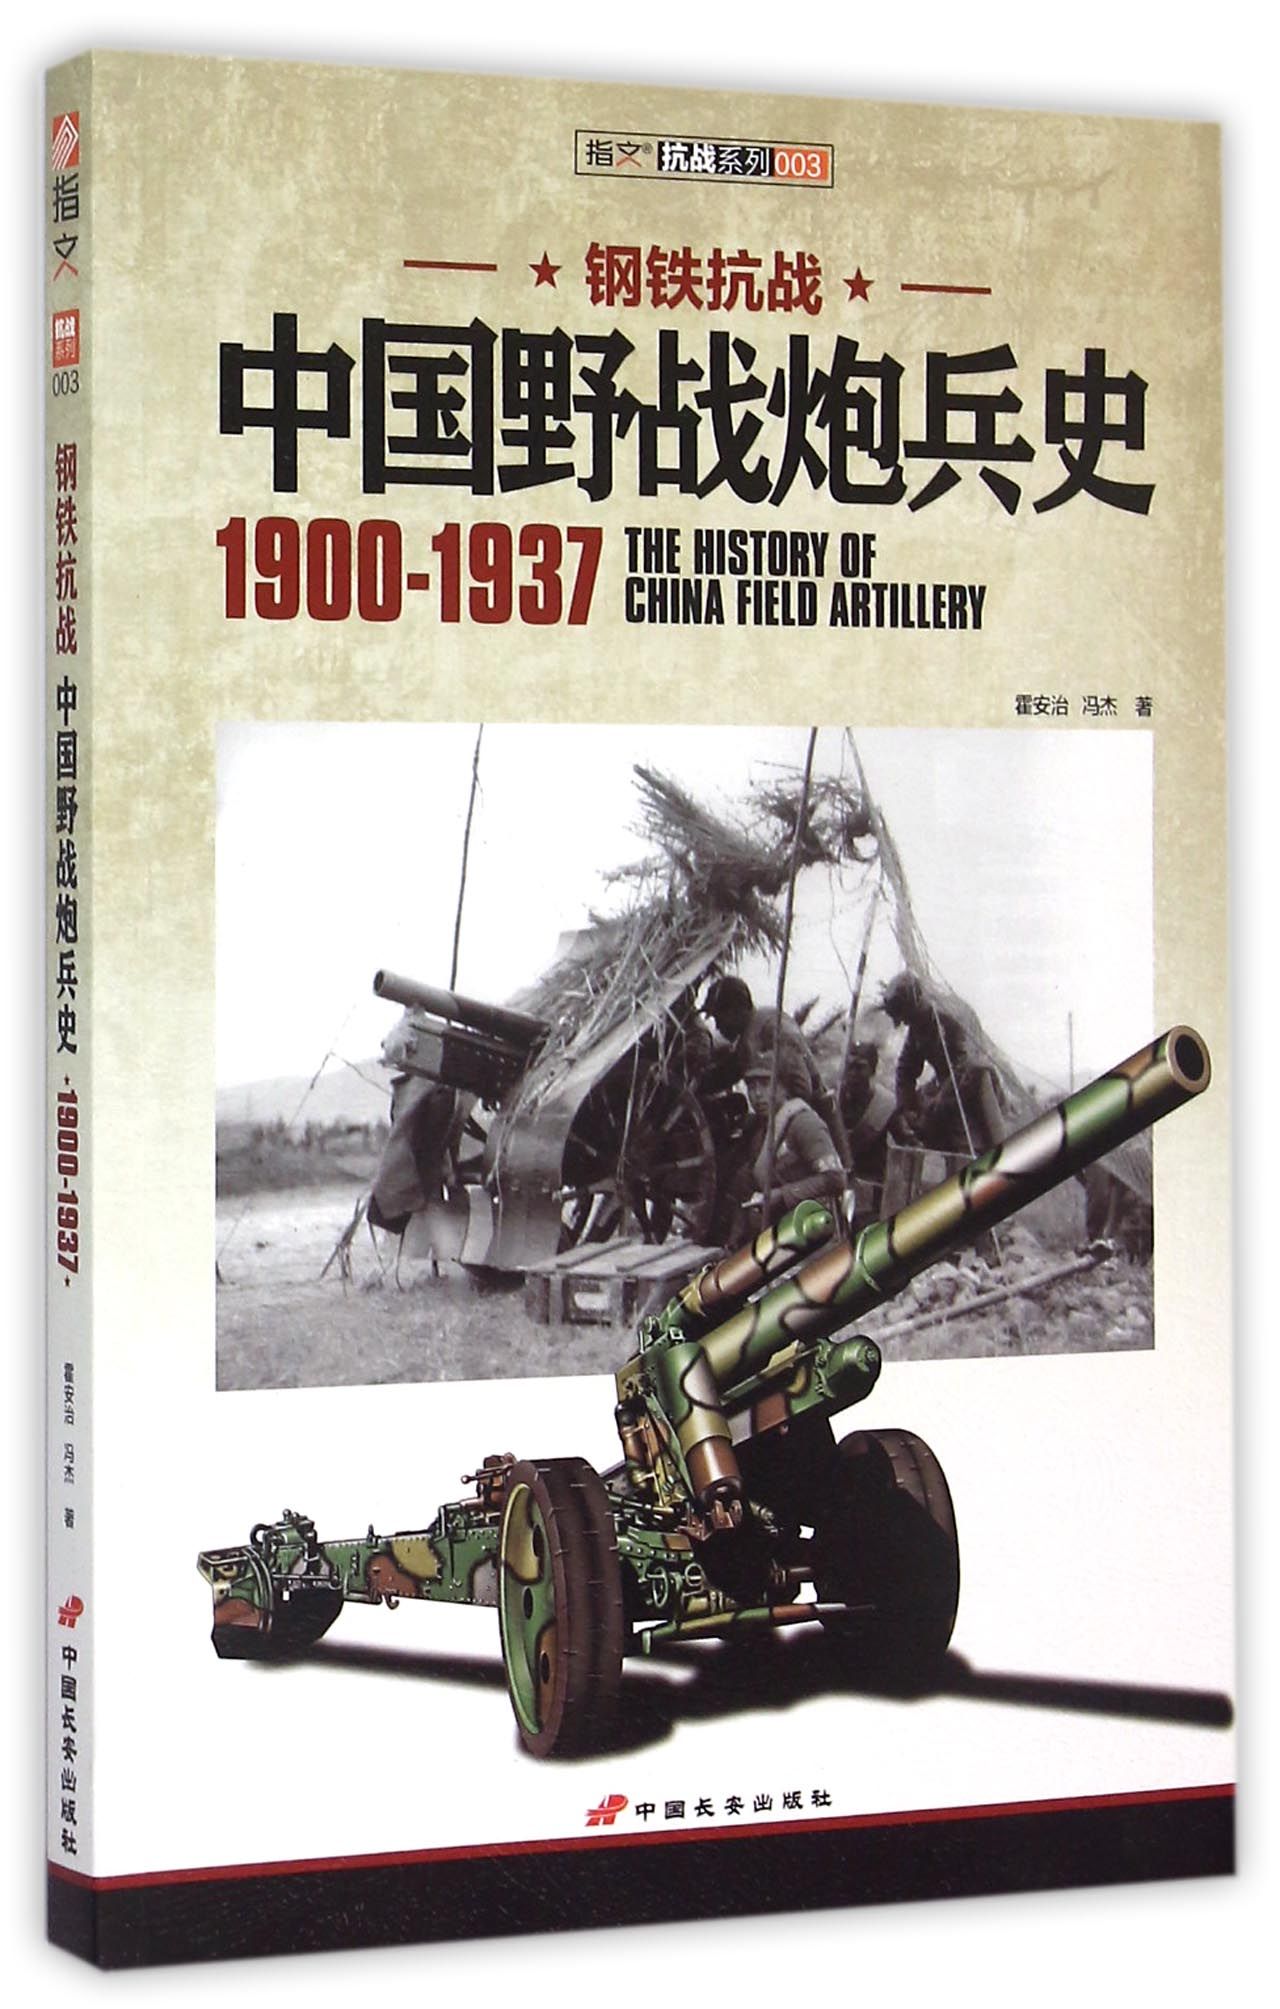 钢铁抗战(中国野战炮兵史190.